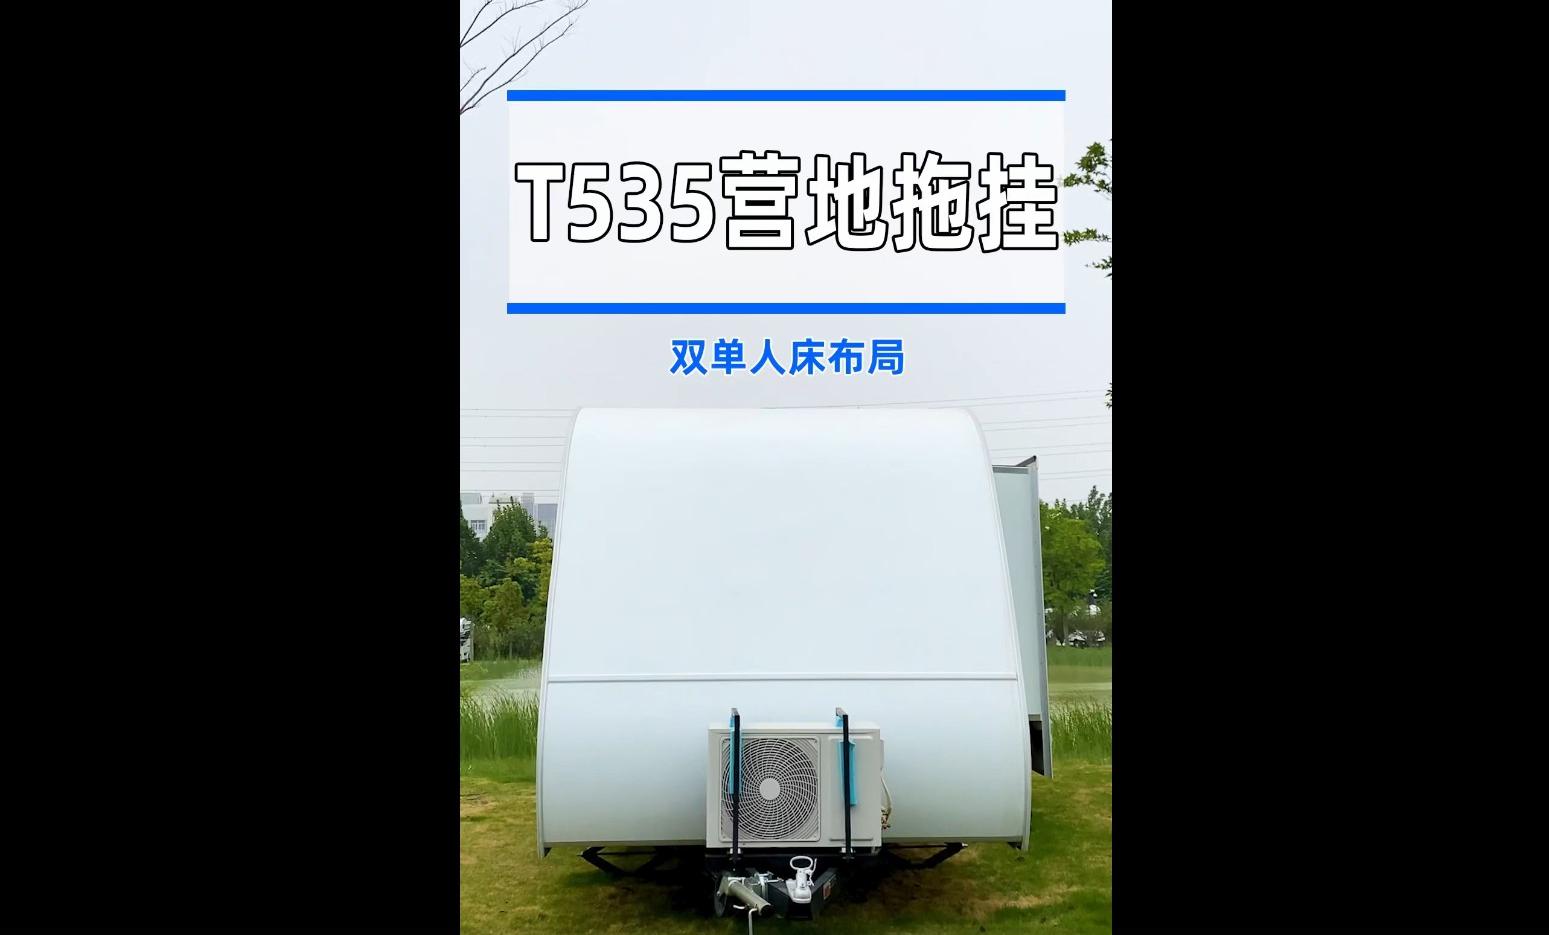 【房車產品】——宇通T535營地拖掛房車，重新定義旅居新方式!